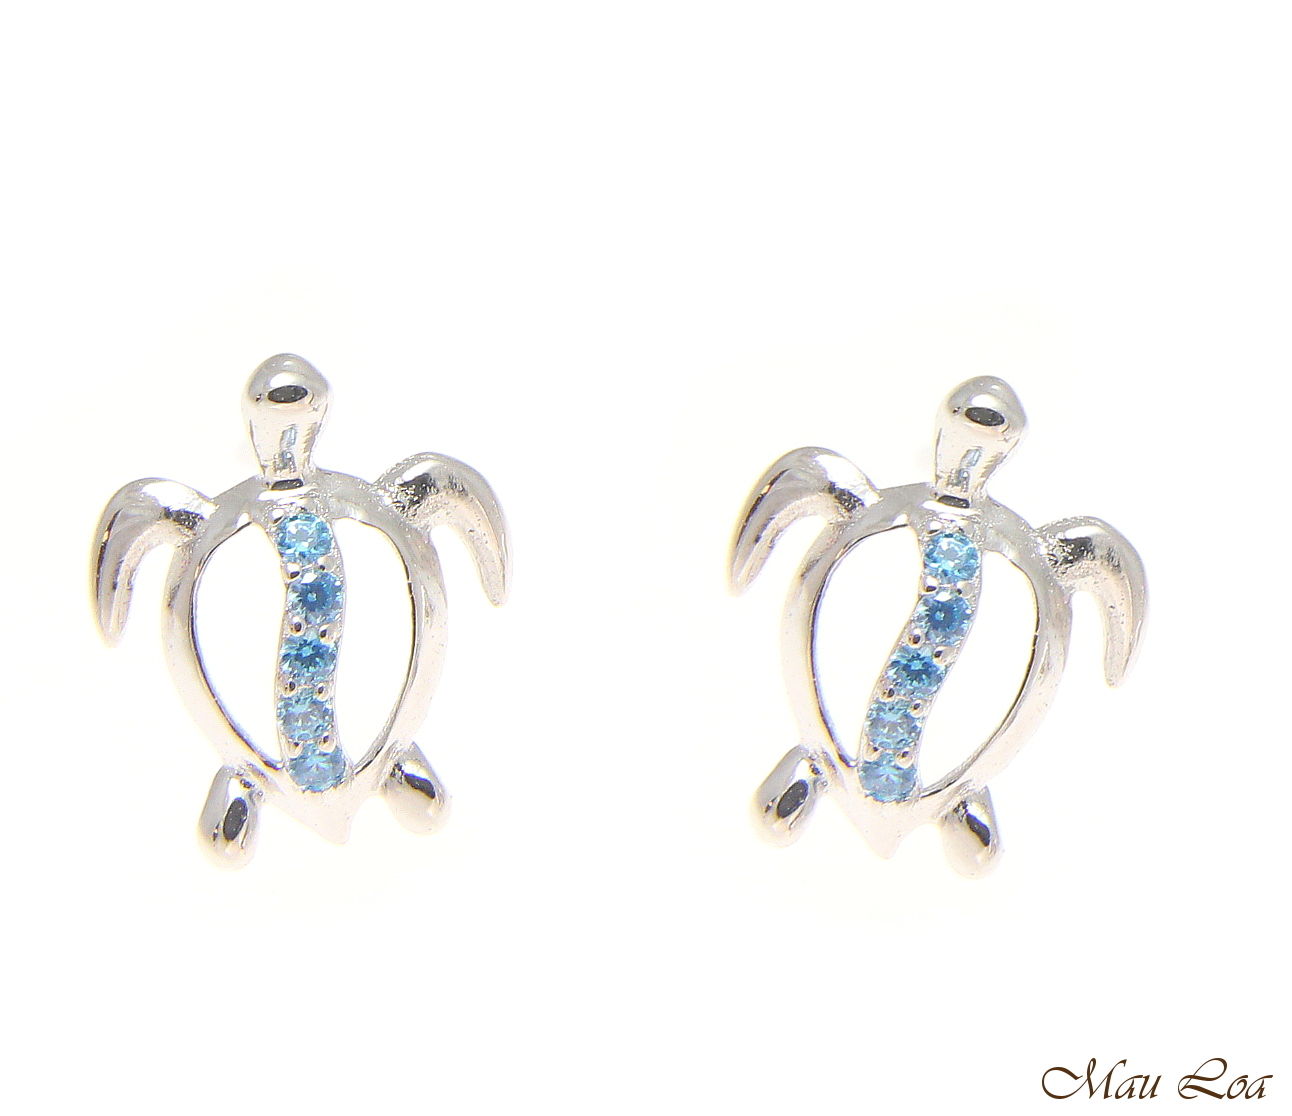 925 Sterling Silver Blue Topaz Hawaiian Honu Turtle Post Stud Earrings